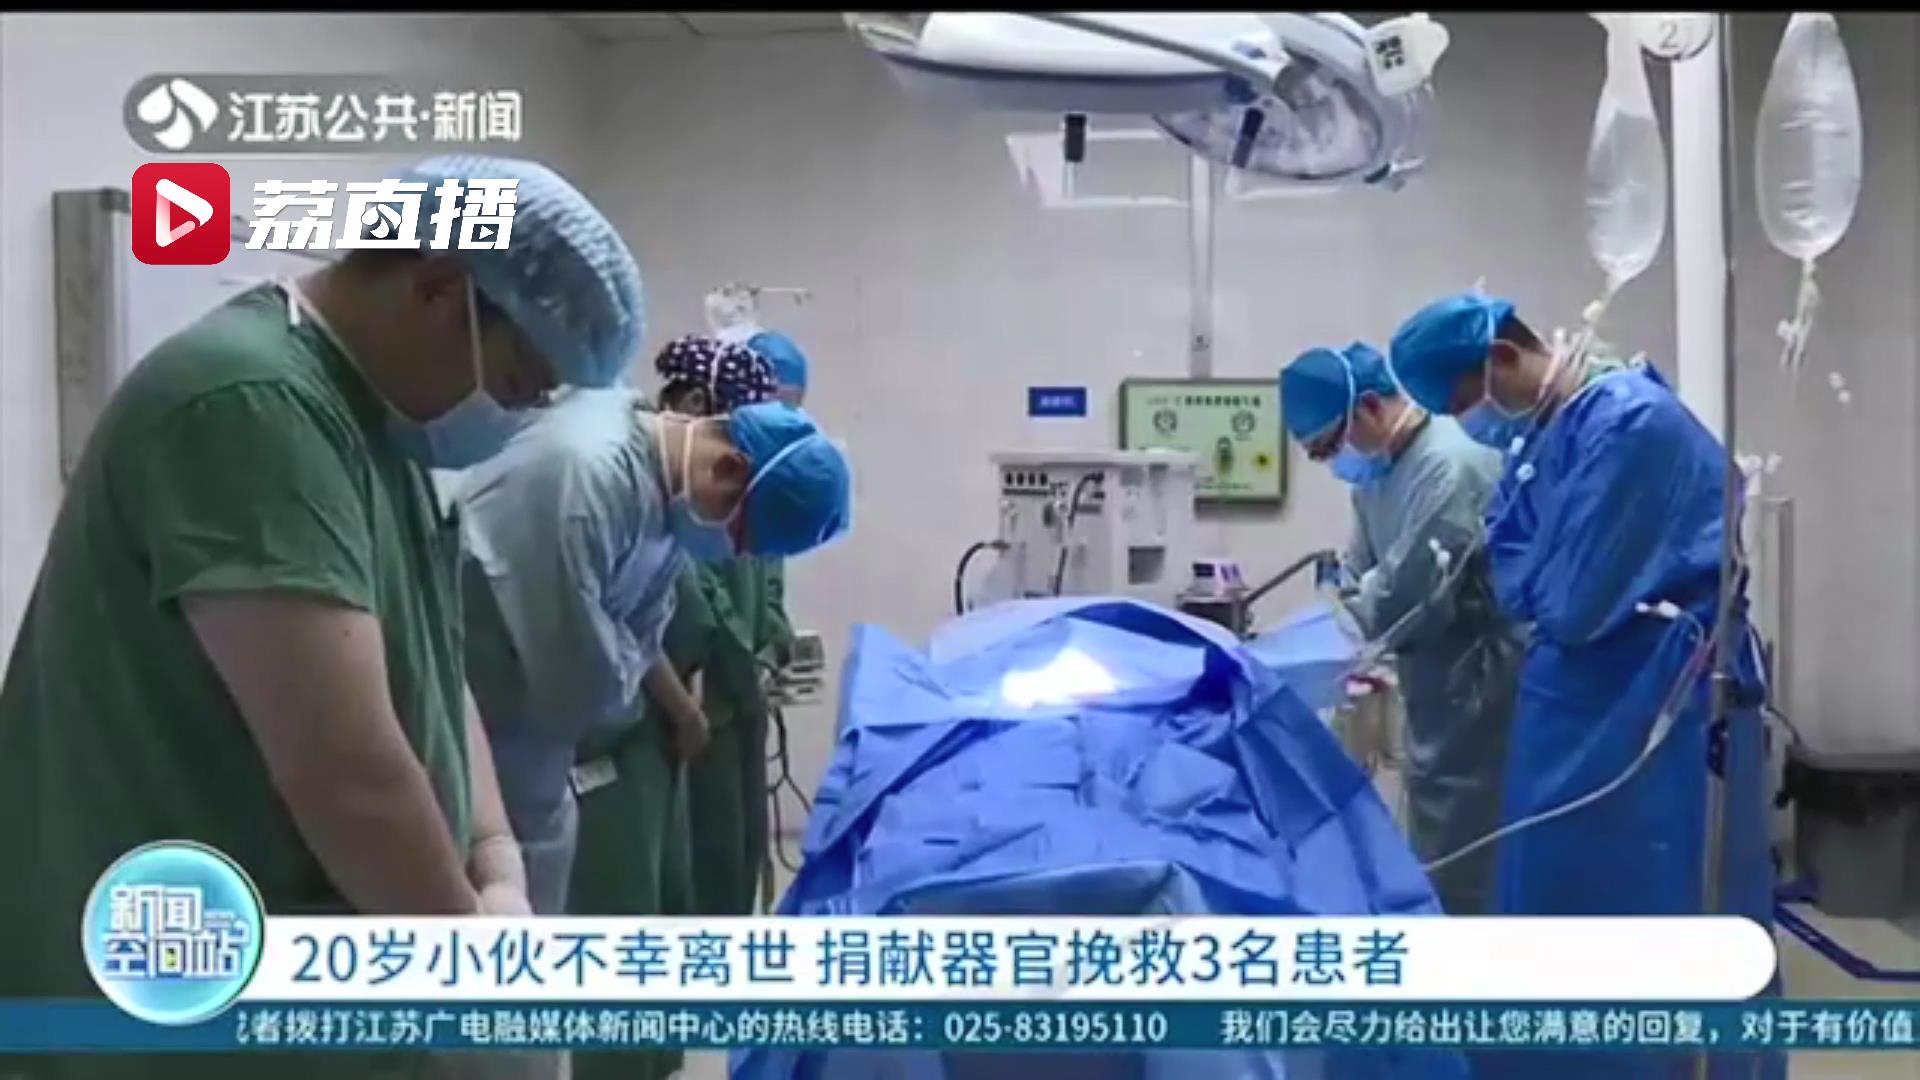 谢谢！泗阳一20岁小伙不幸离世 家人决定捐献器官挽救3名患者